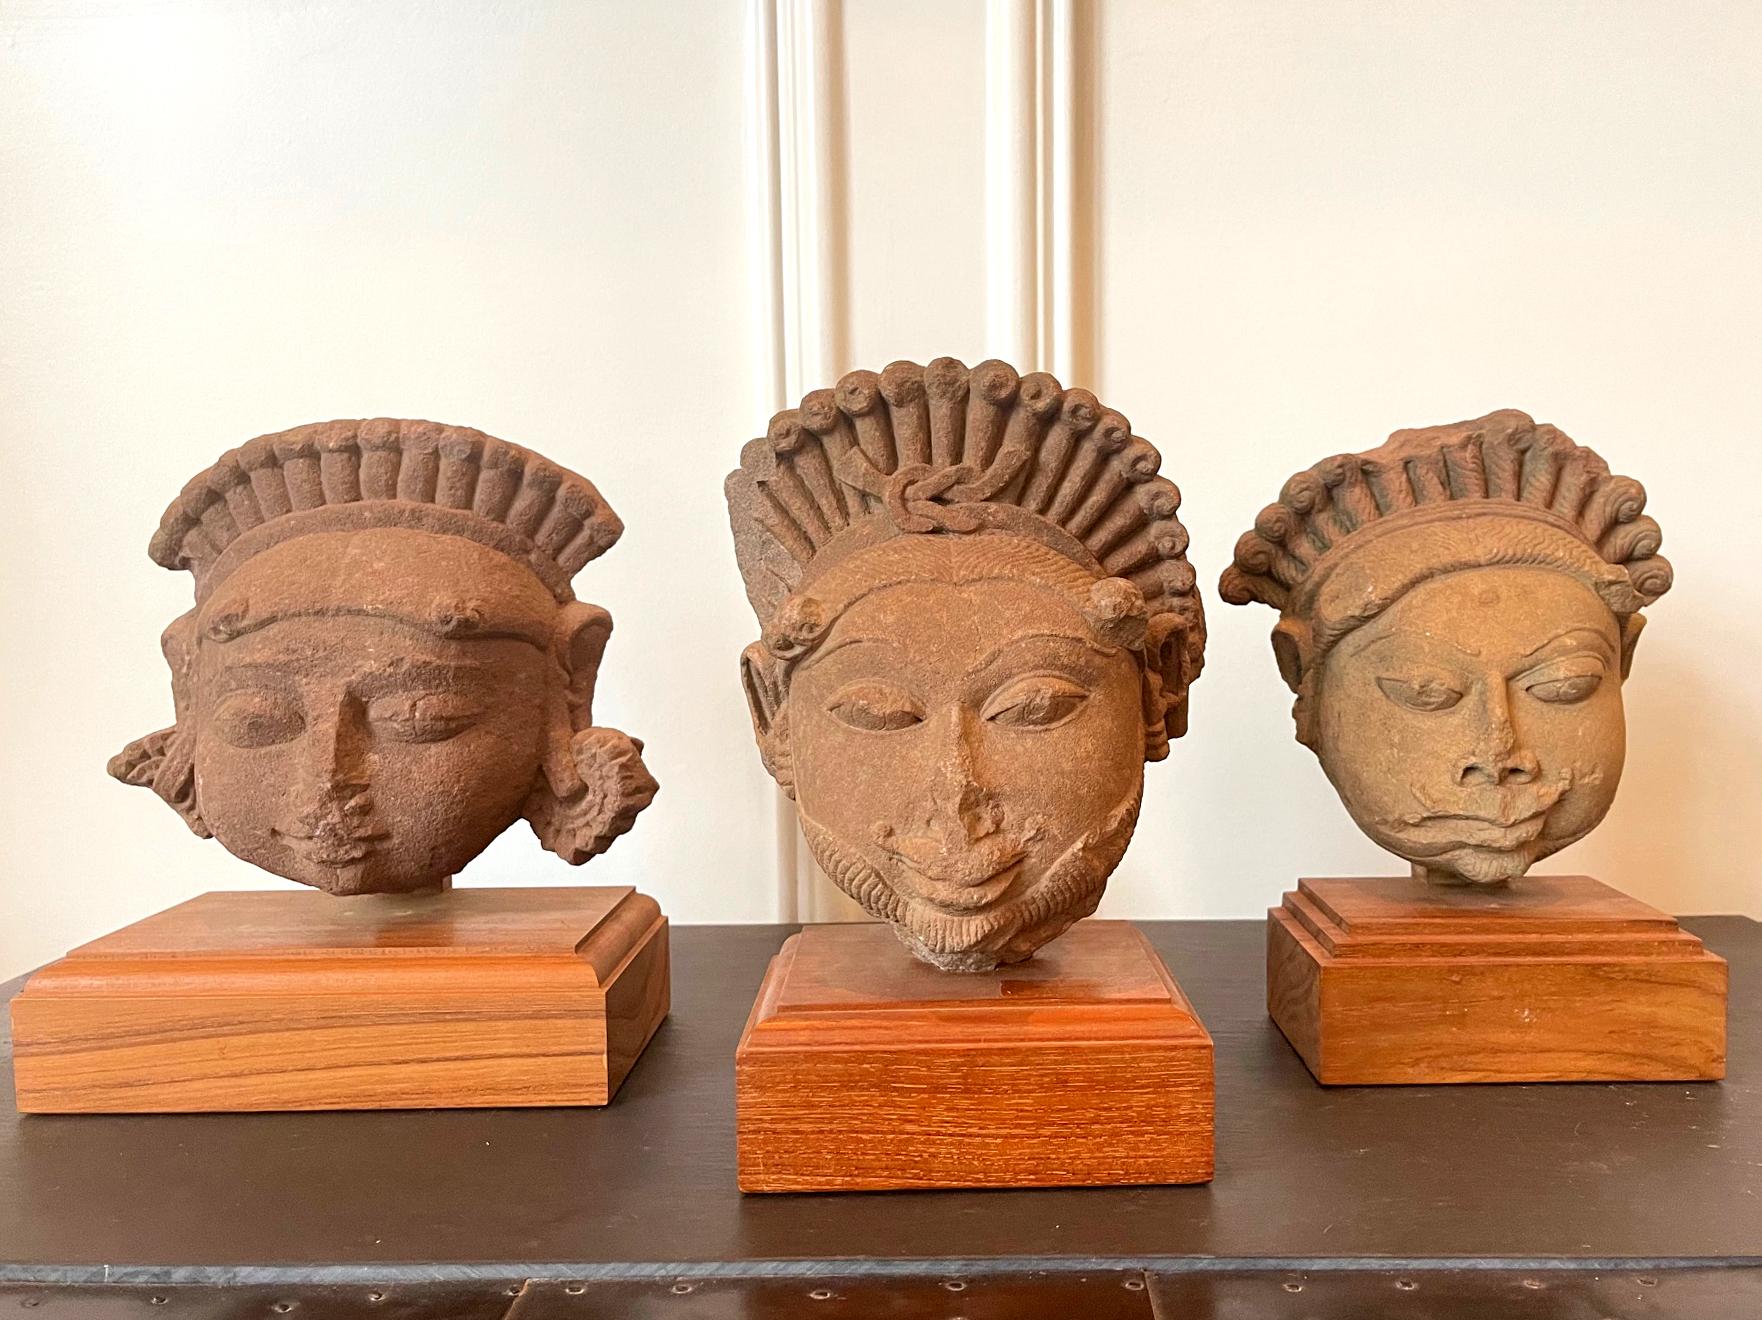 Collection de trois têtes sculptées en grès sur des présentoirs en bois provenant du nord de l'Inde, du Rajasthan ou de l'Inde. 
 Madhya Pradesh, vers 11-12e siècle. Fragmentées d'une grande statue au corps entier, ces têtes en grès rouge